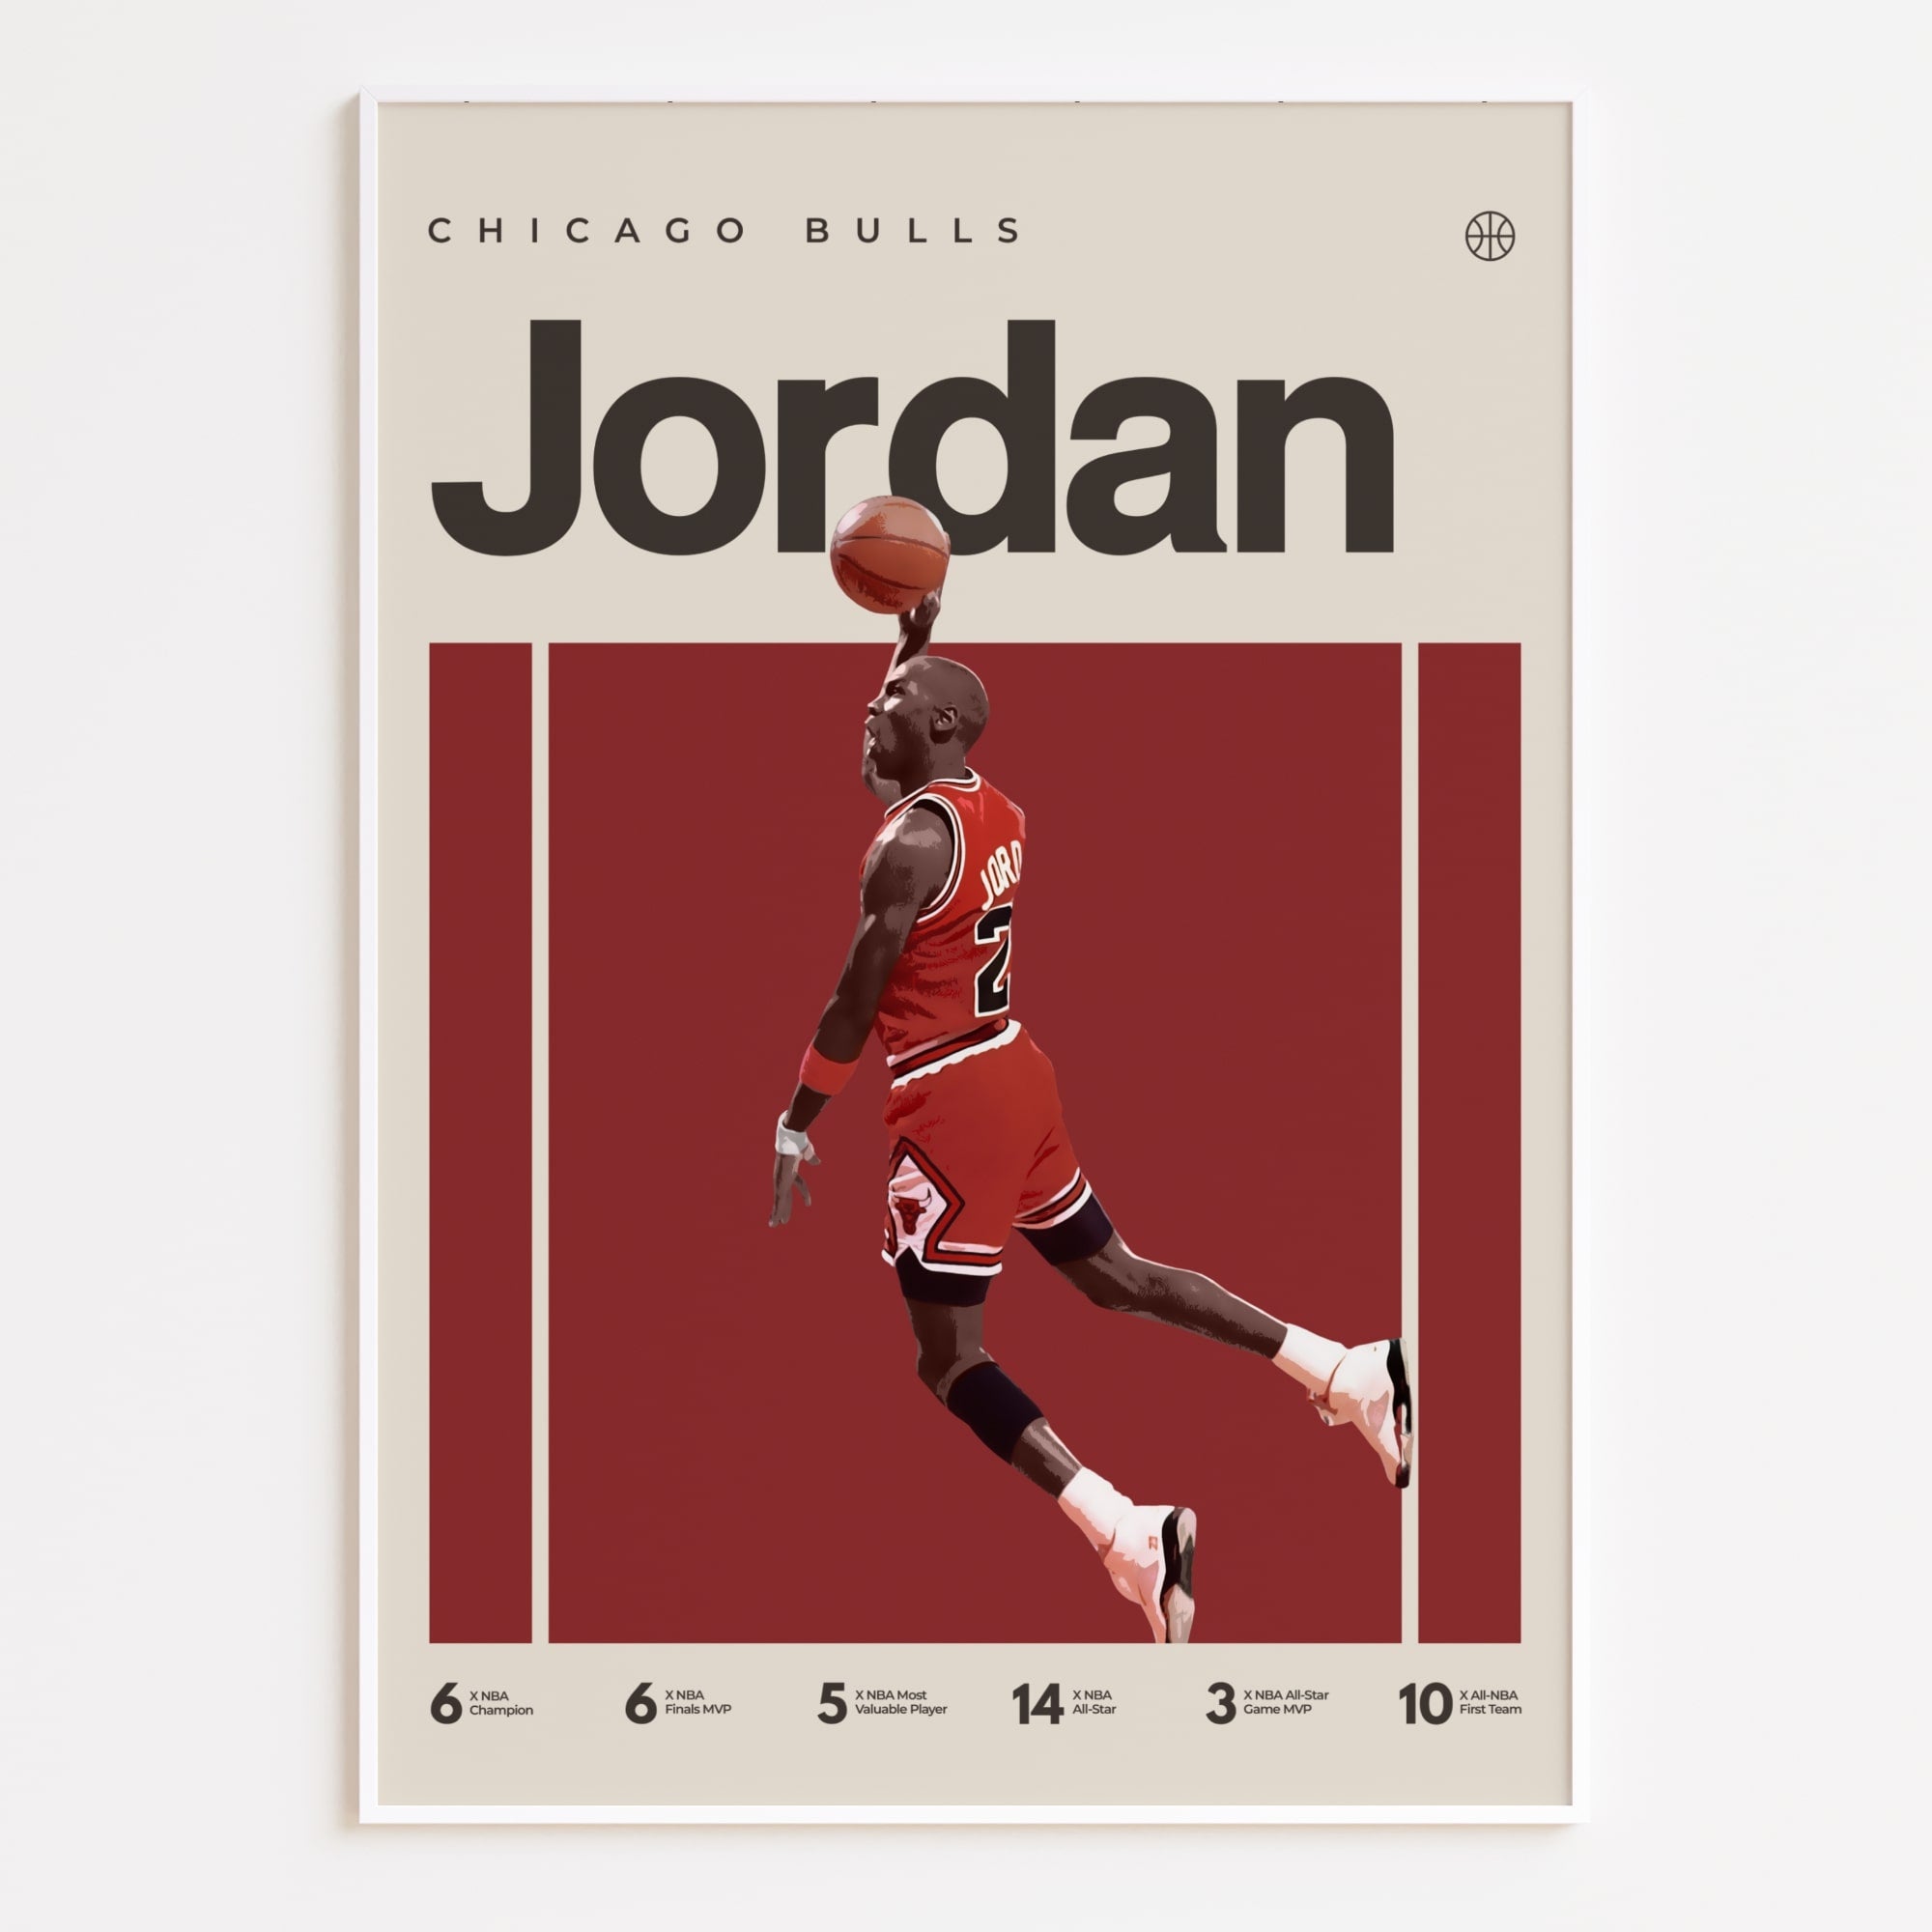 Michael Jordan Poster